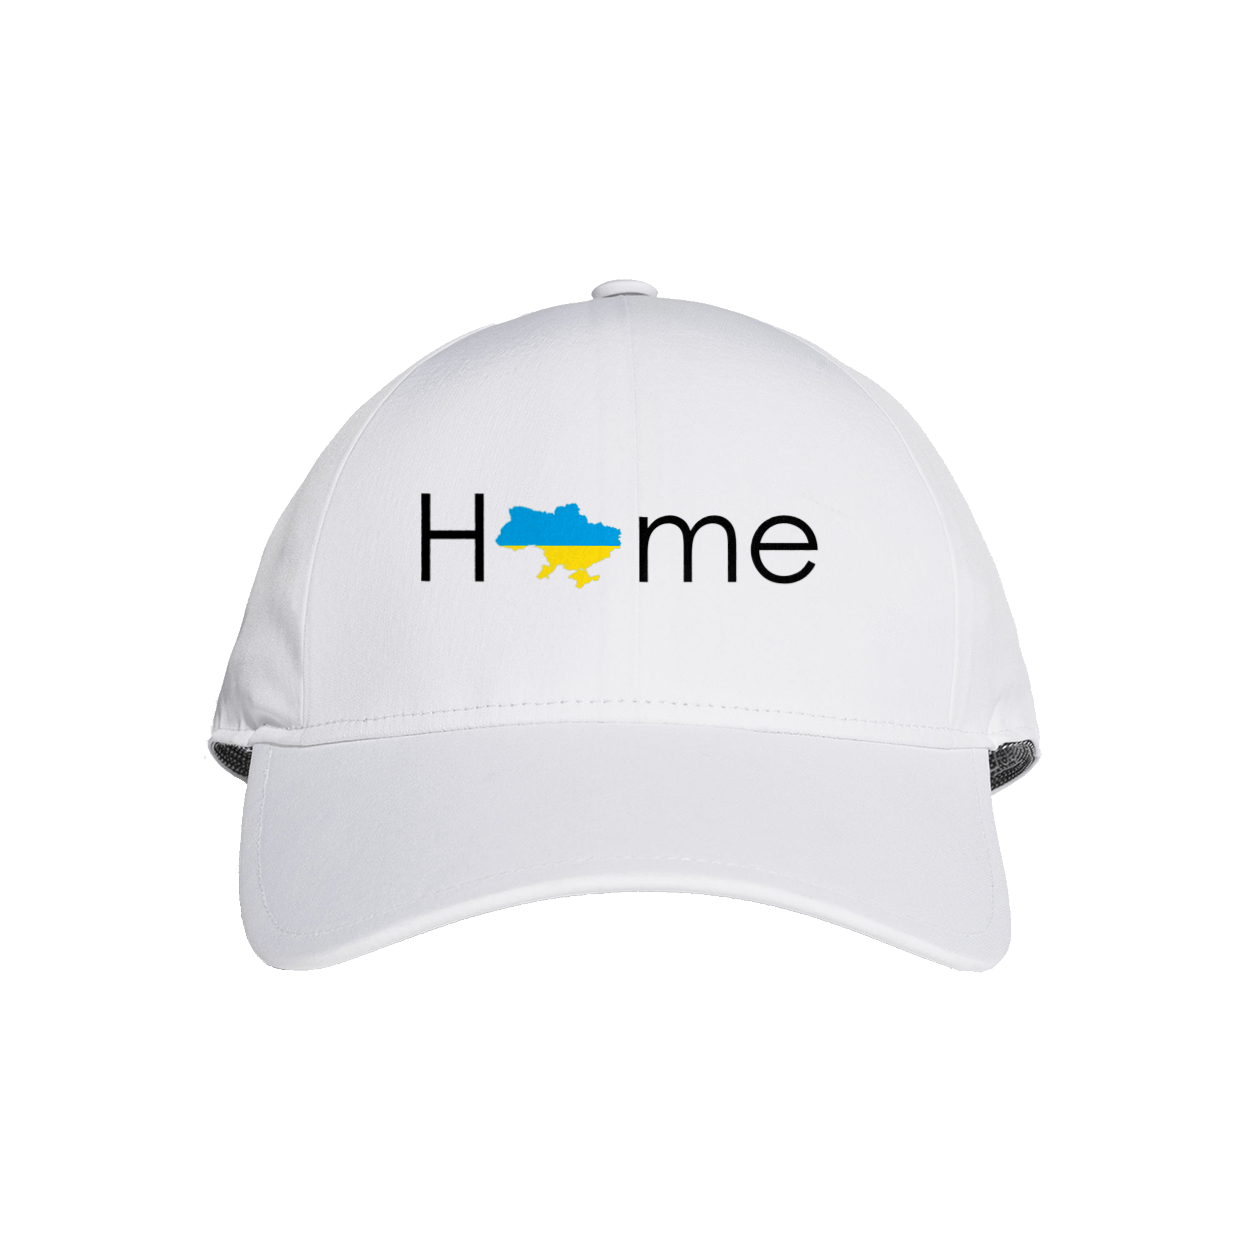 Ukraine Home, Дім Україна, Дім Україна